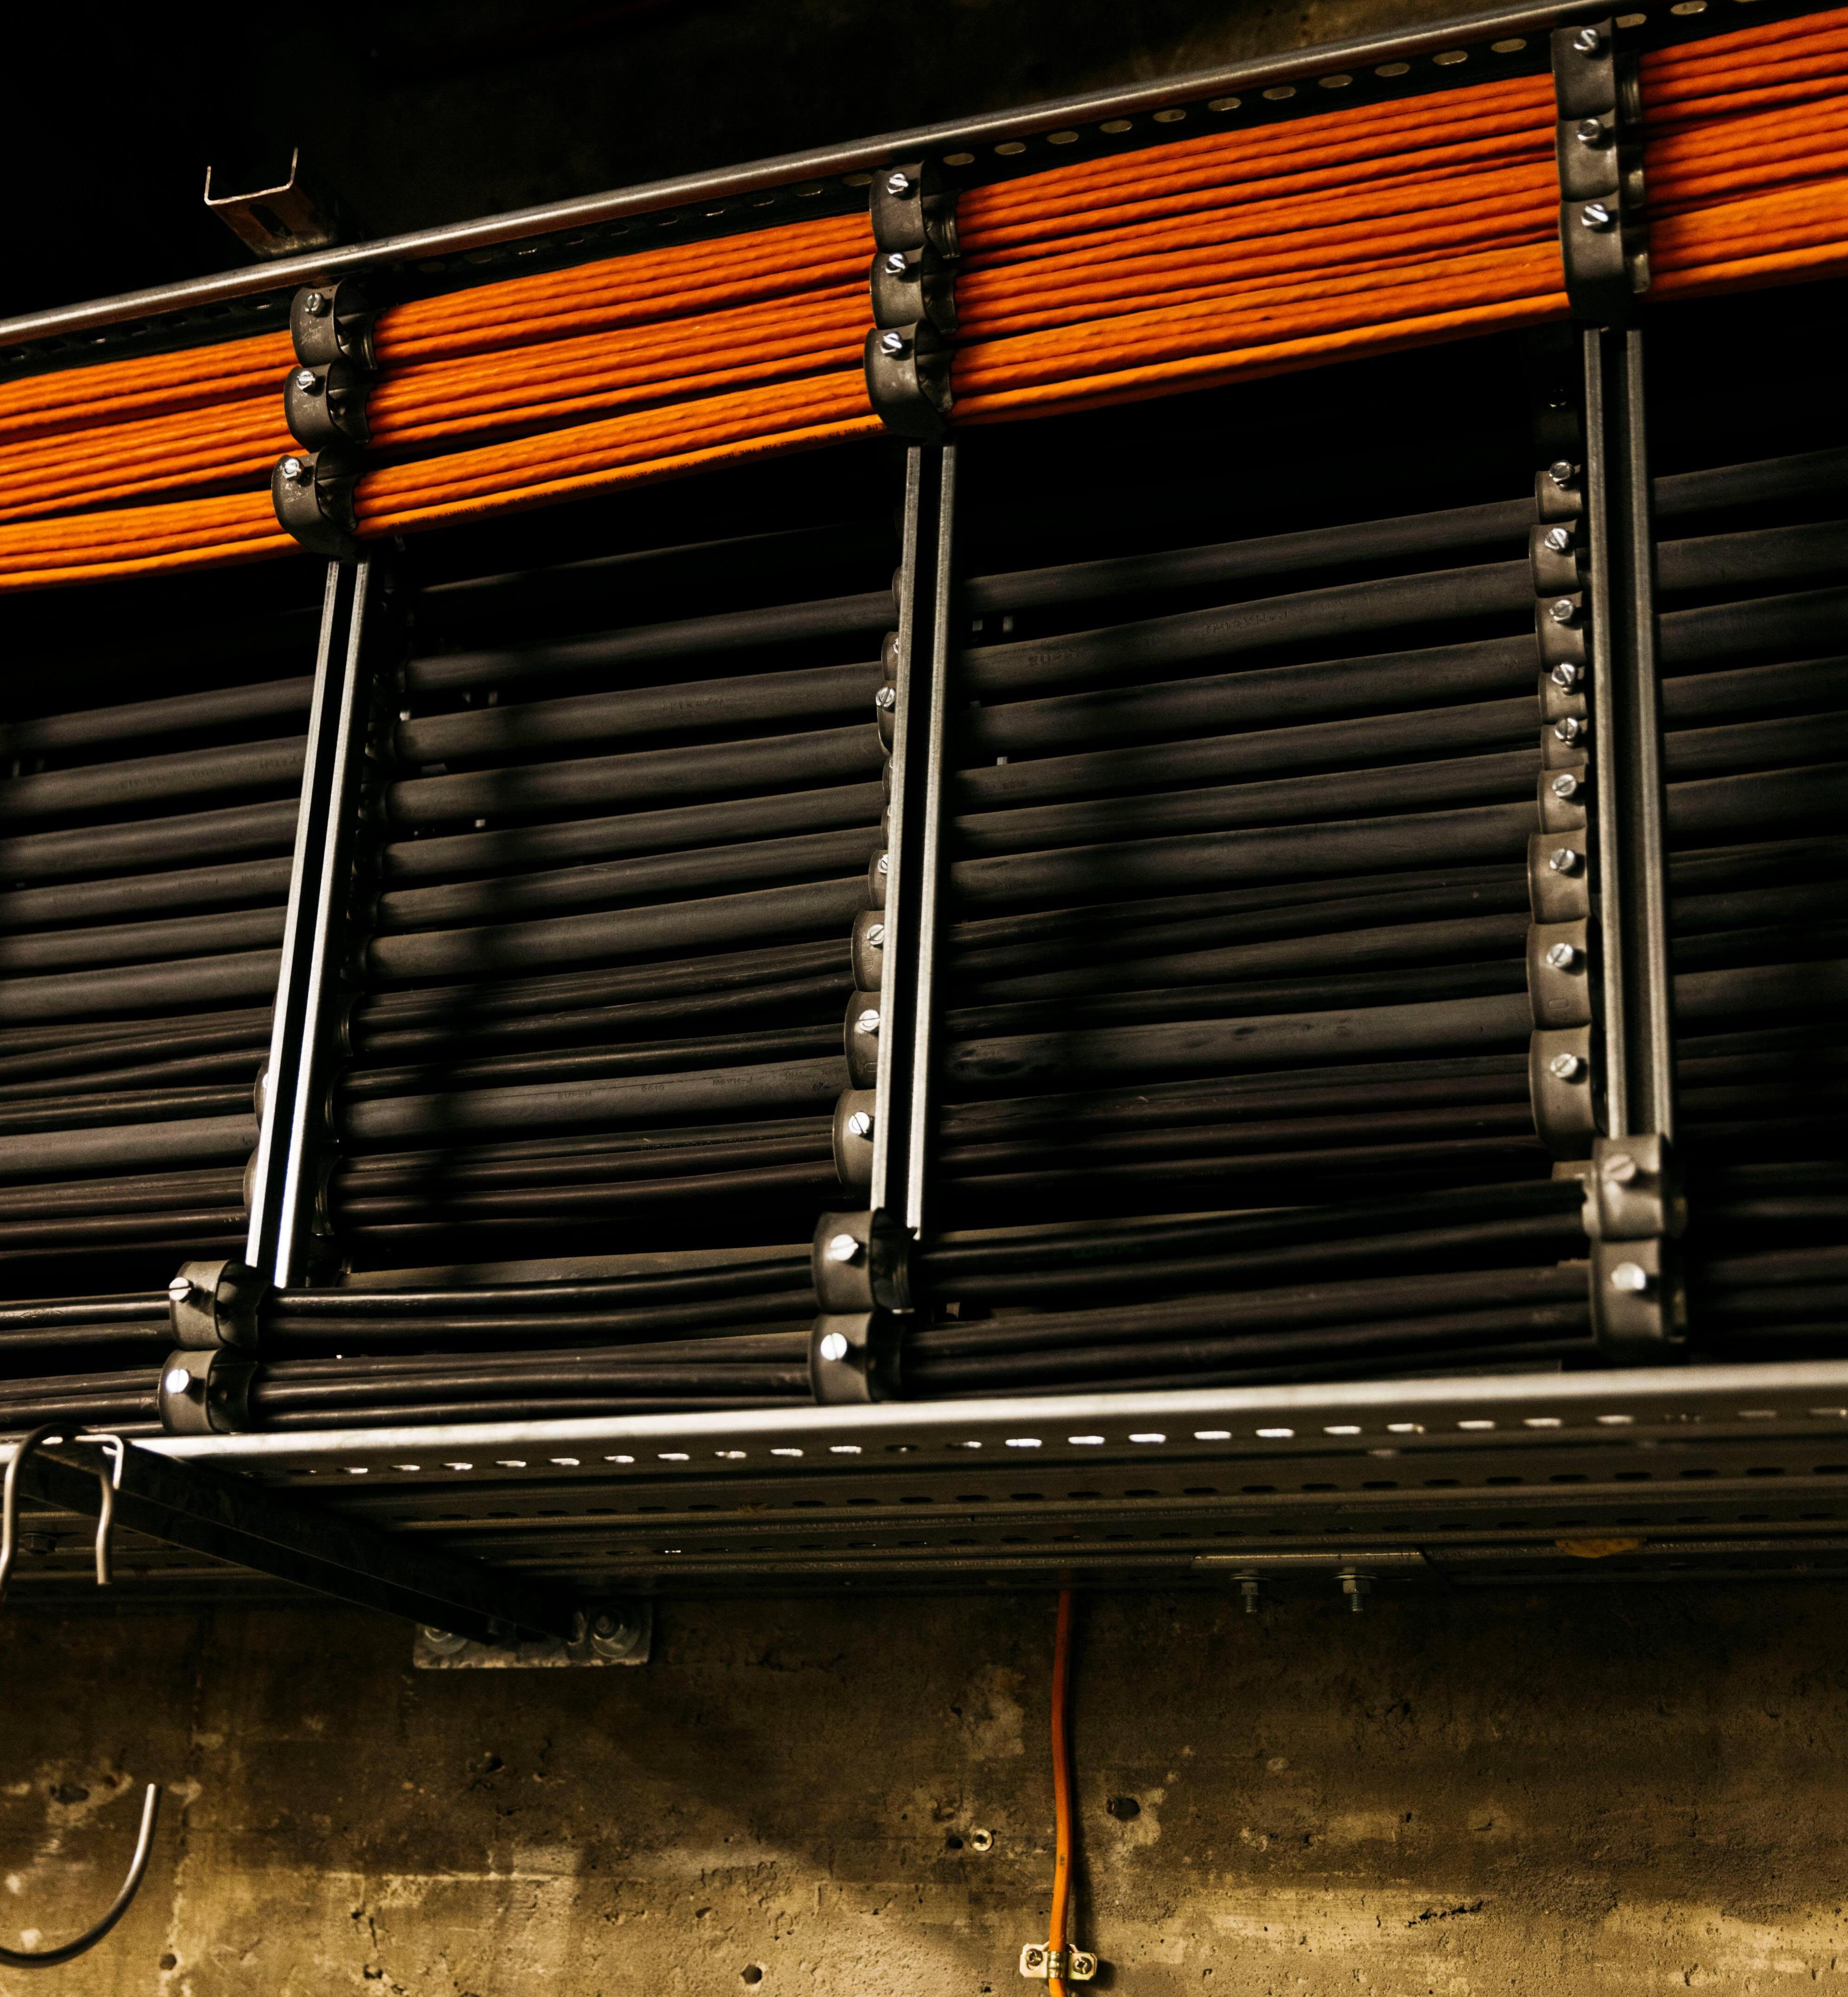 Schwarze und orangefarbene Kabel verlaufen entlang einer Wand.